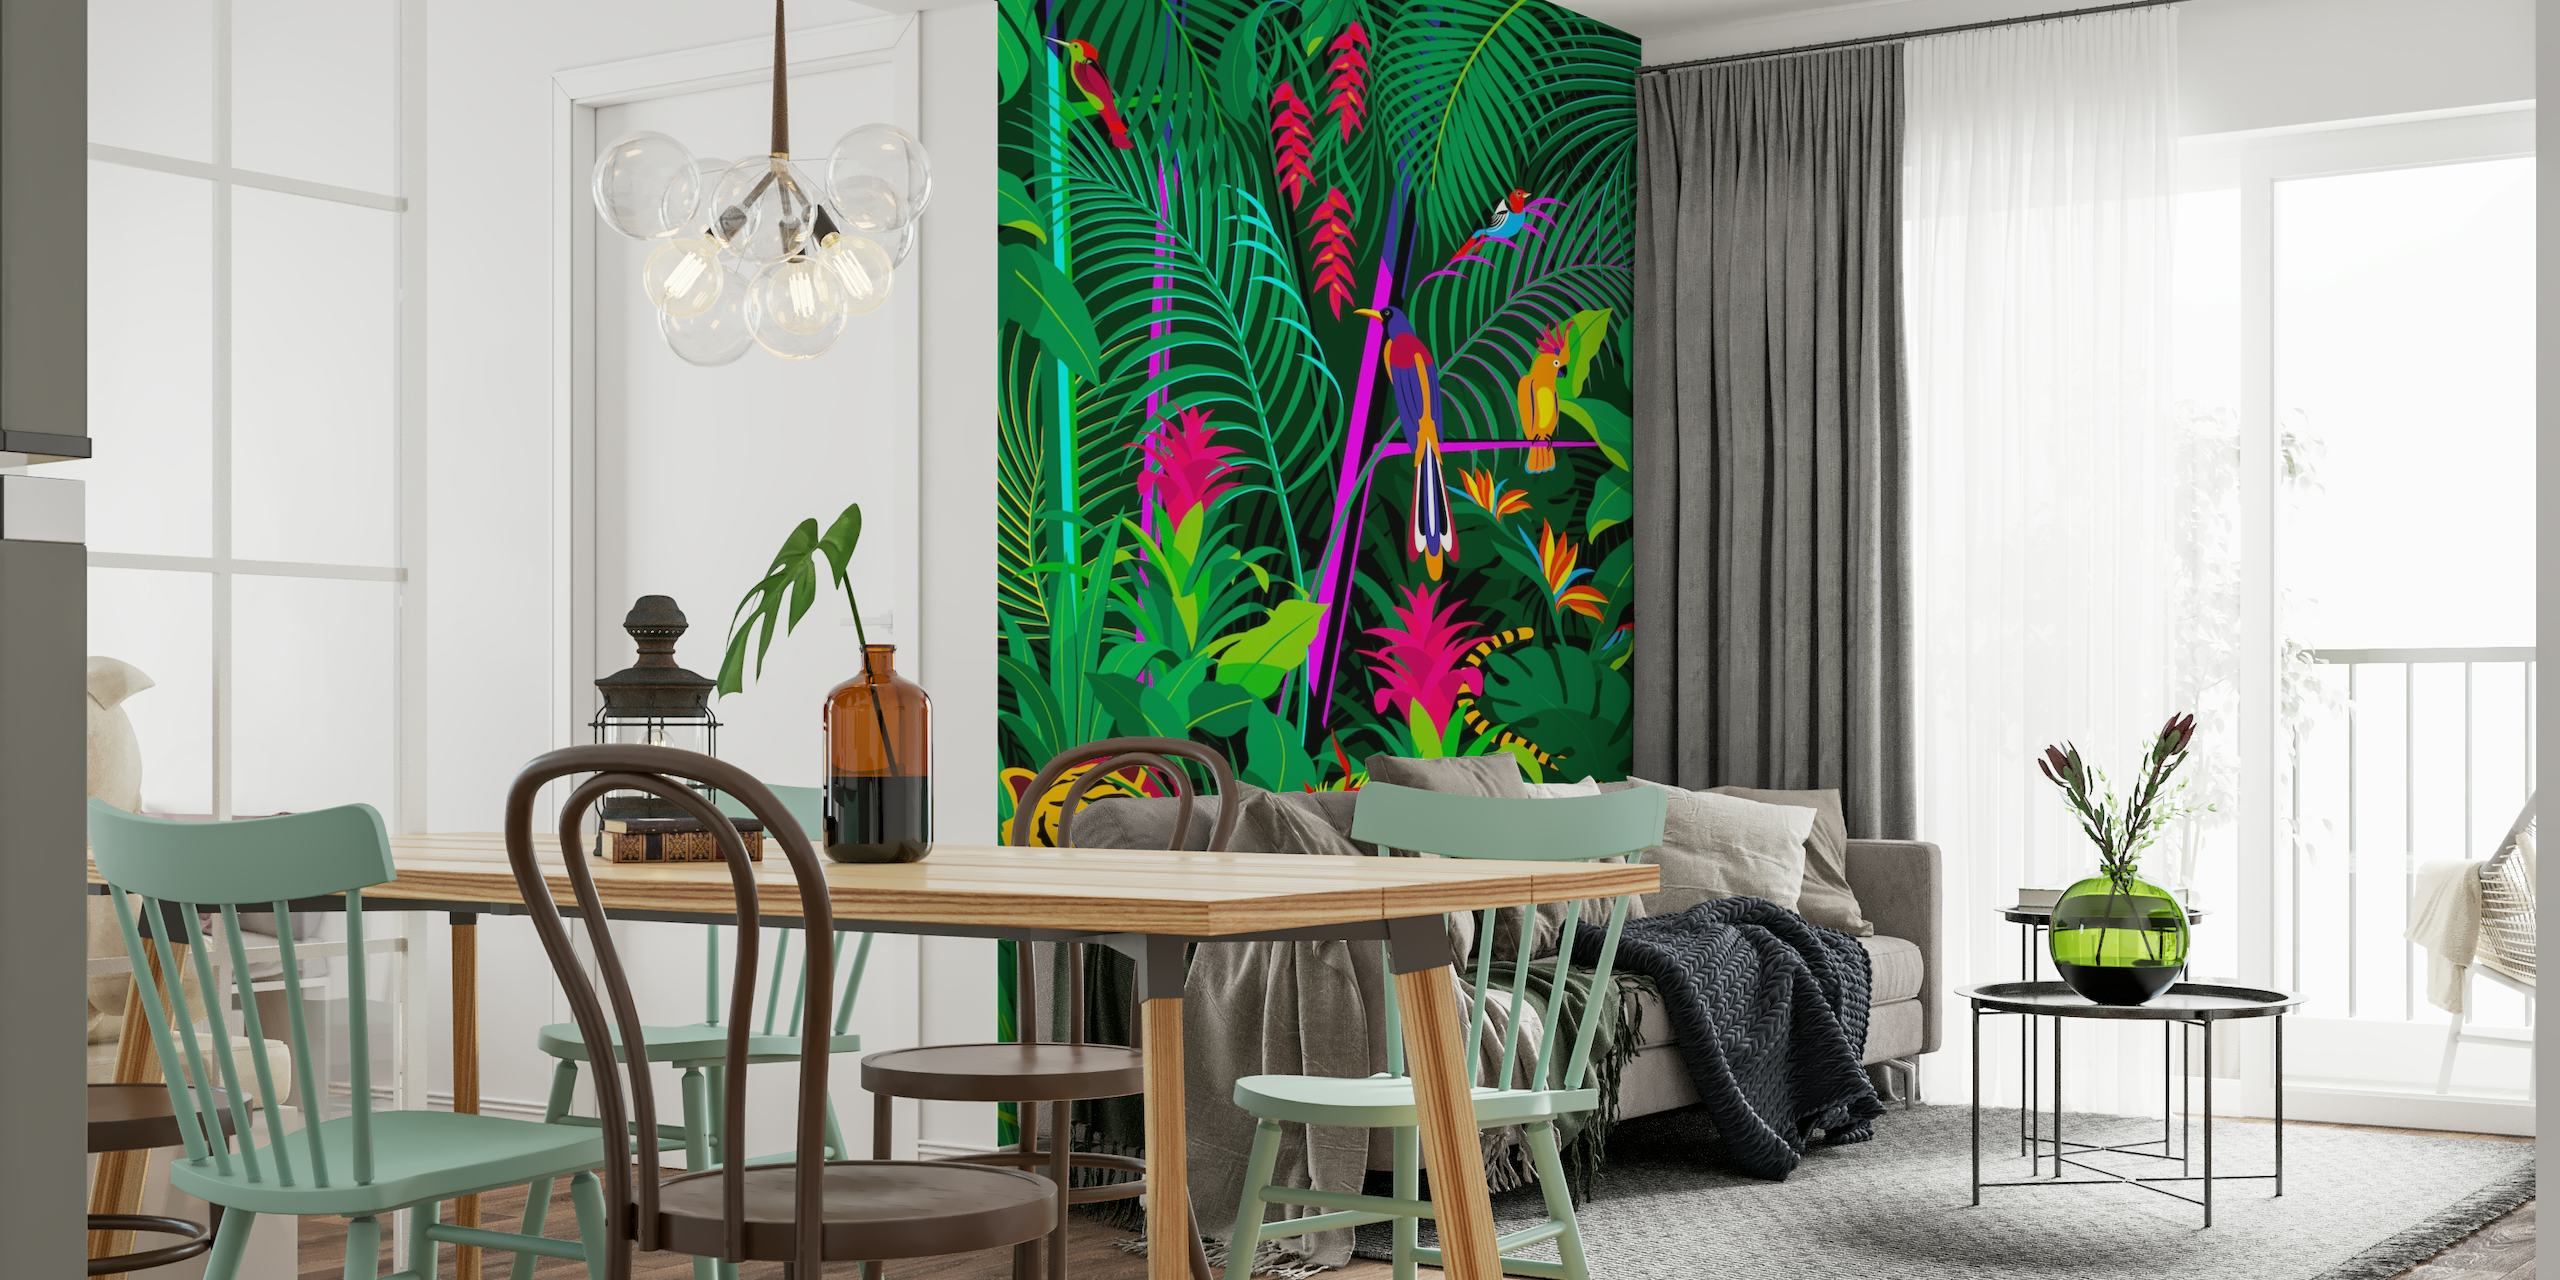 Vægmaleri i tropisk jungle med tæt grønt løv, farverige blomster og en skjult tiger